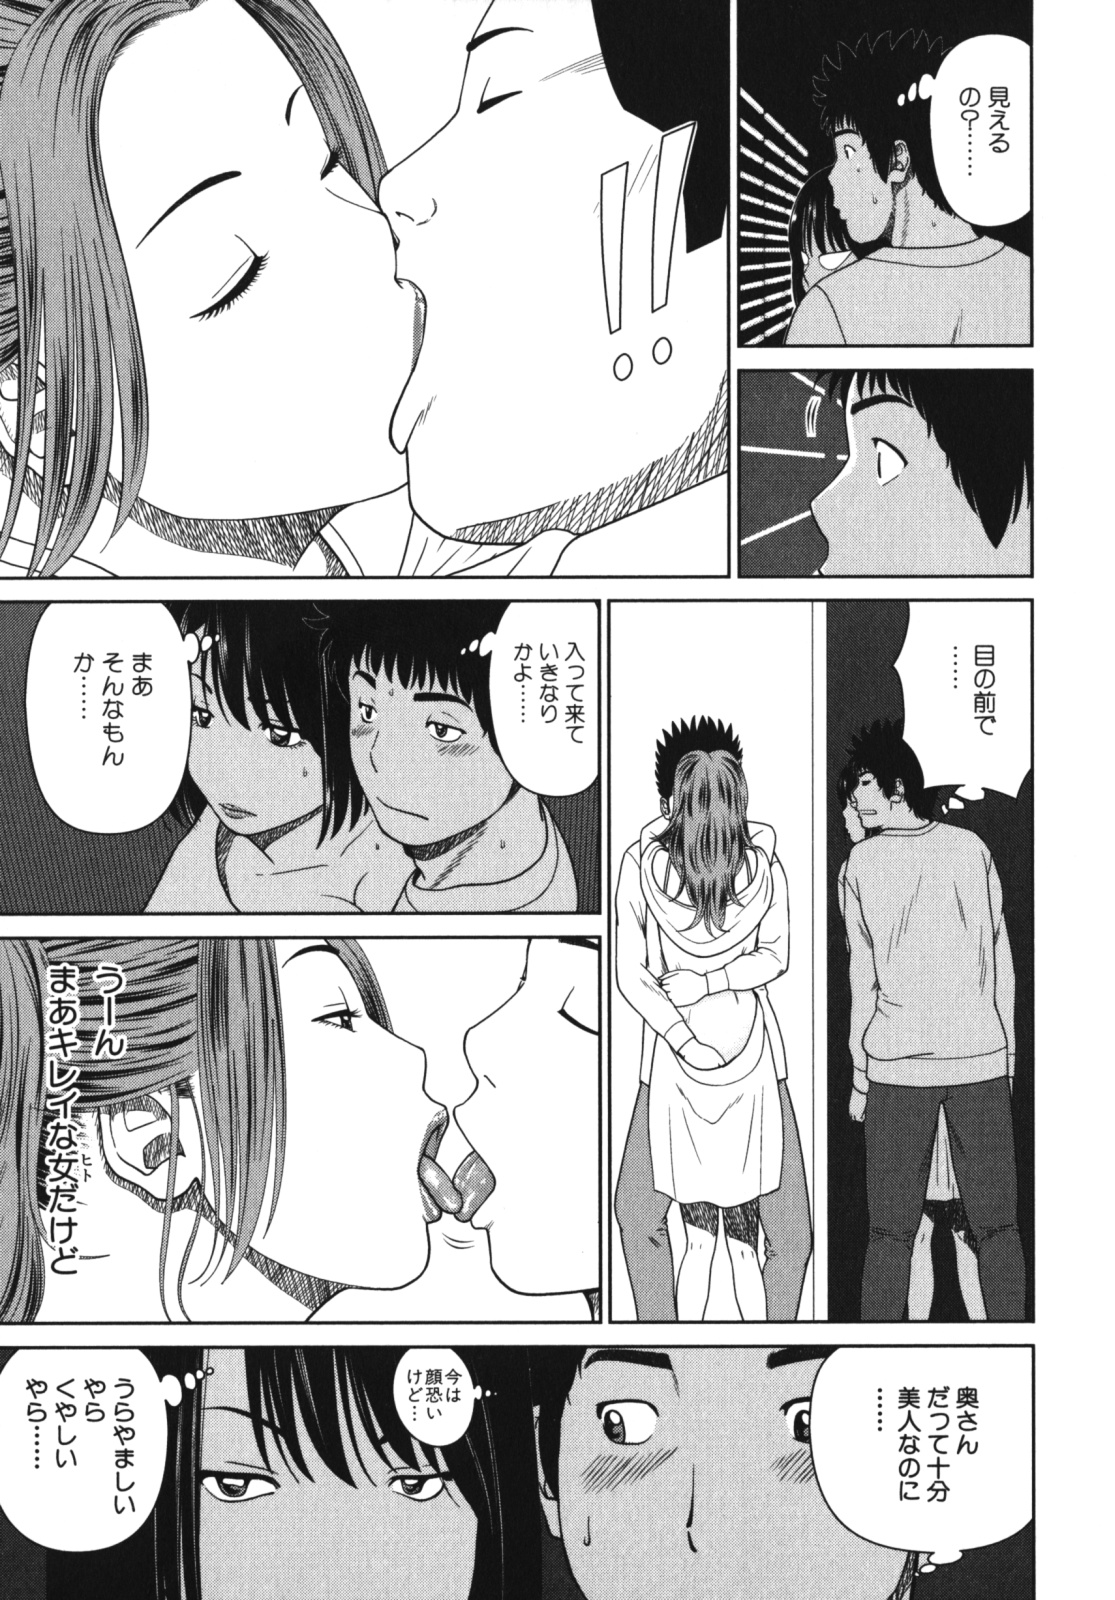 [Anthology] Geki Yaba Vol.4 - Namade Shitene page 14 full